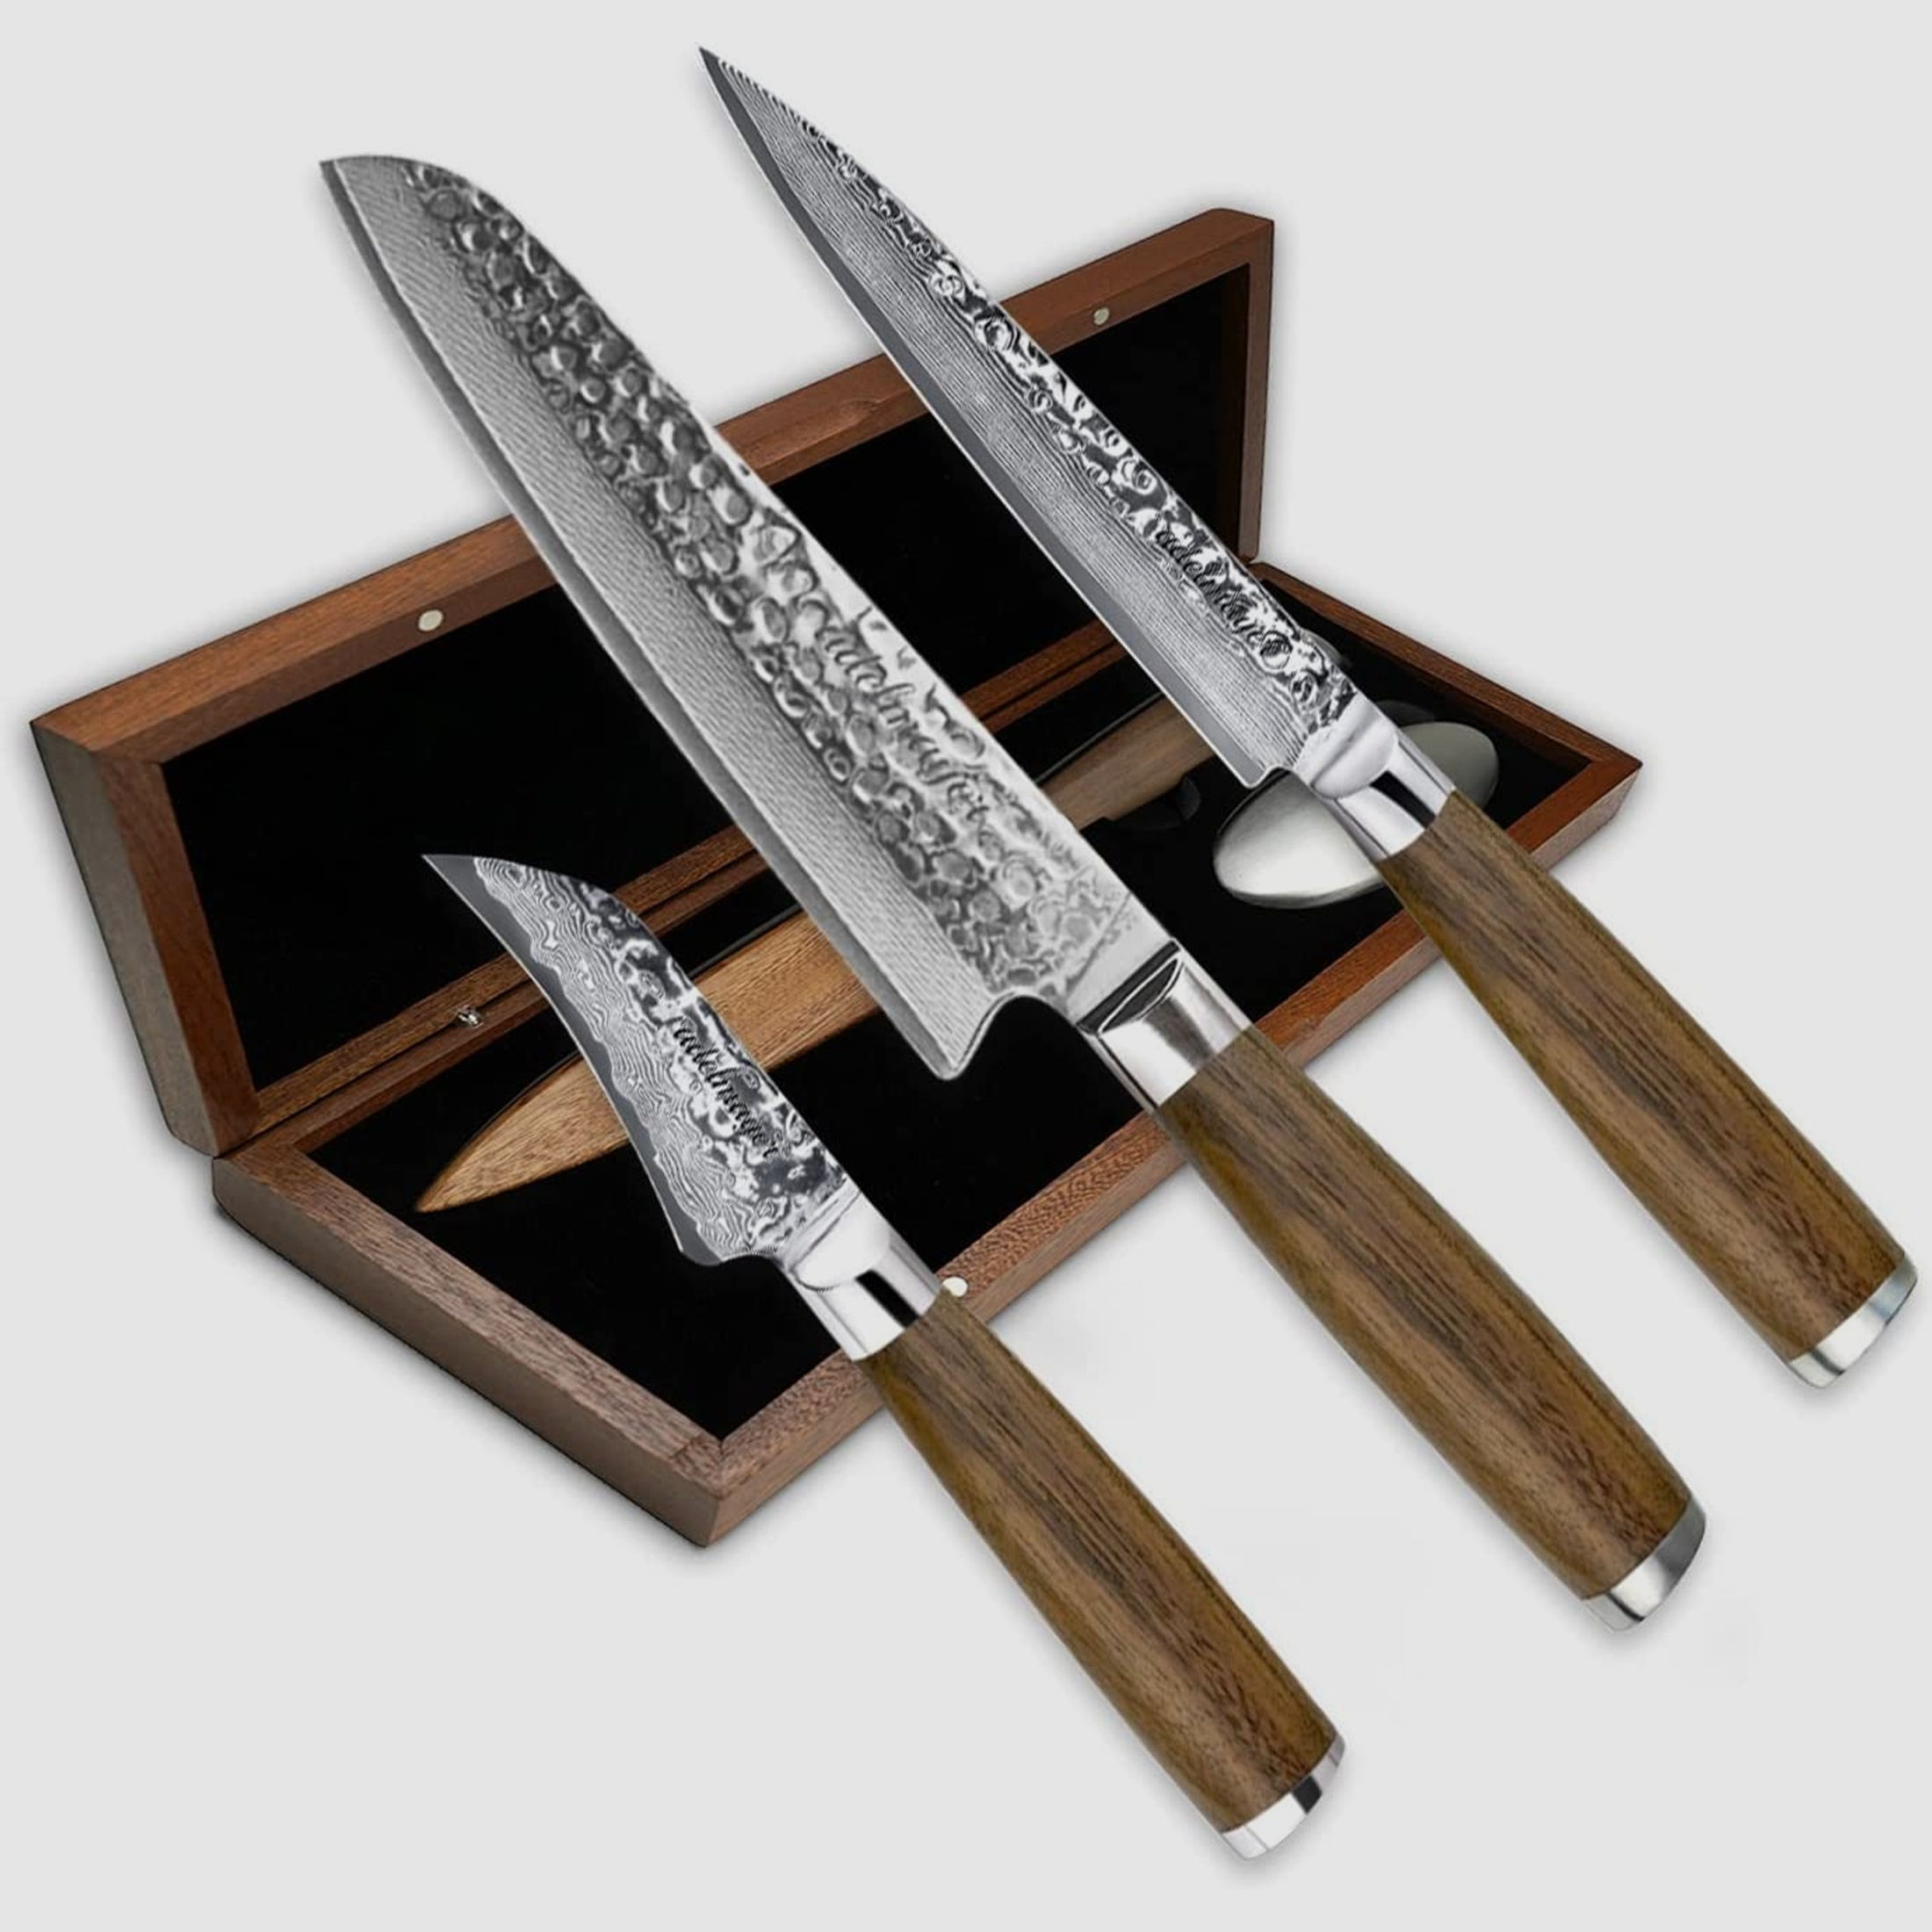 adelmayer® Damastmesser Set NAGANO - 3-teiliges Messerset aus japanischem Damast-Stahl: Santokumesser, Allzweckmesser & Vogelschnabel Schälmesser